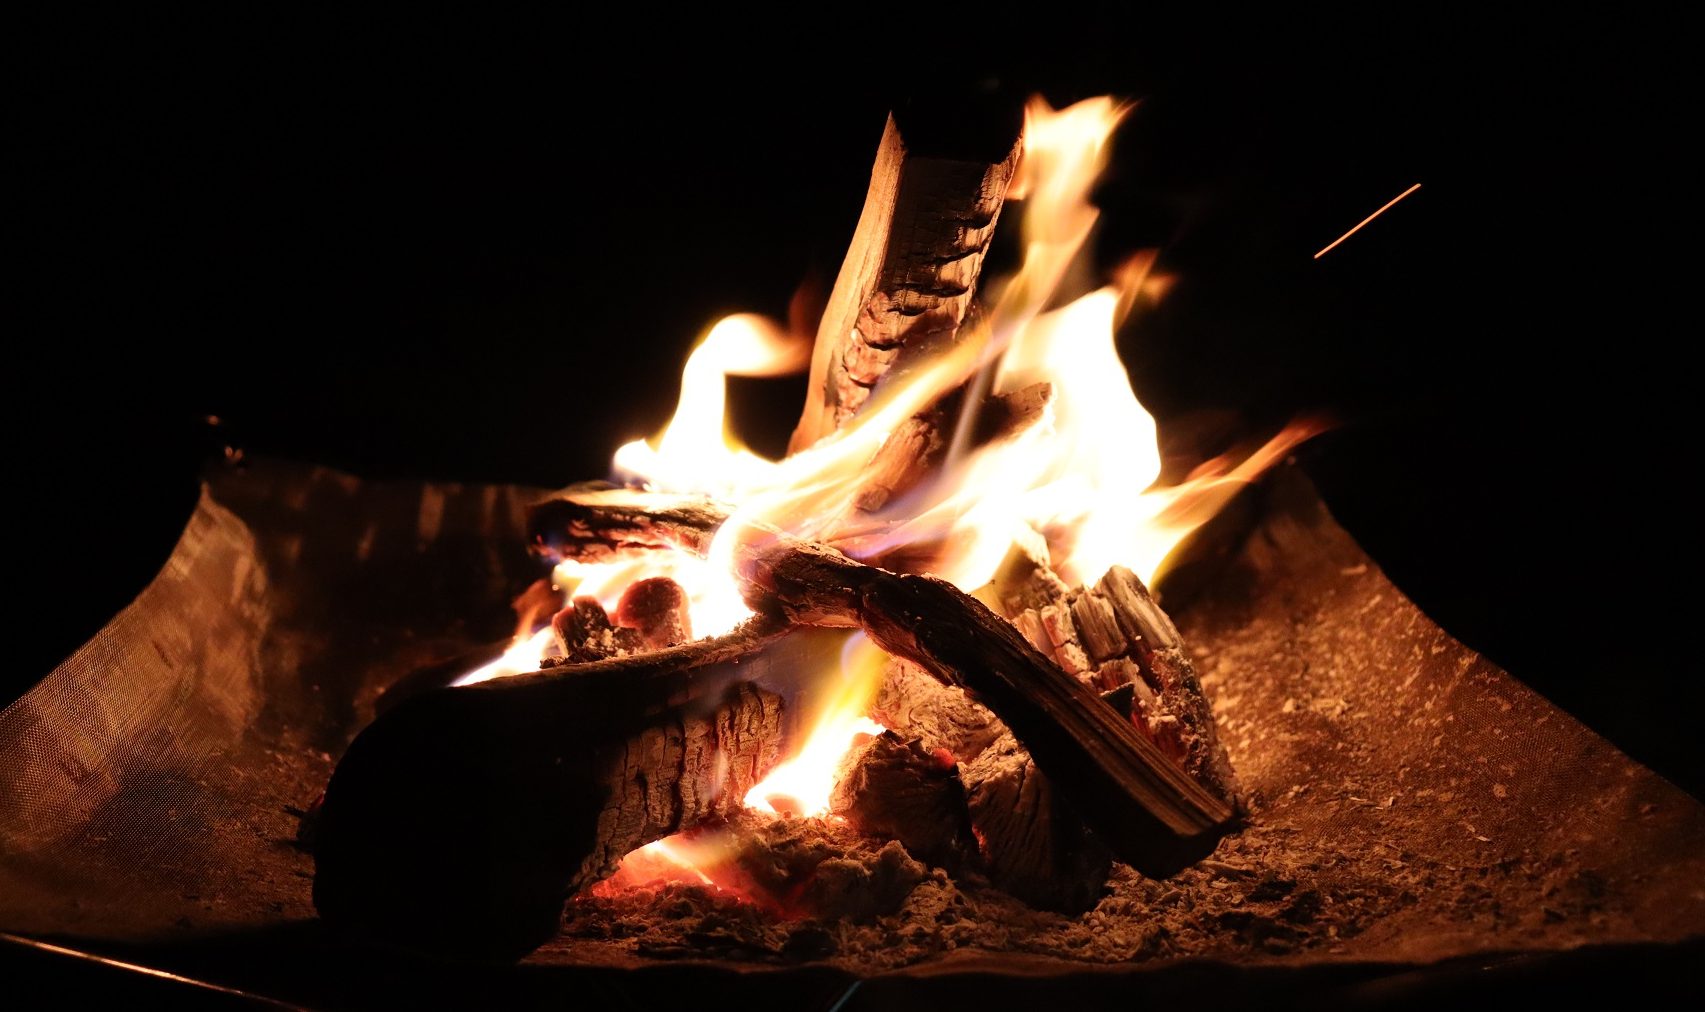 とにかく火おこし 薪でやってみた編 – 焚火を楽しむ大人たちへ Kubell